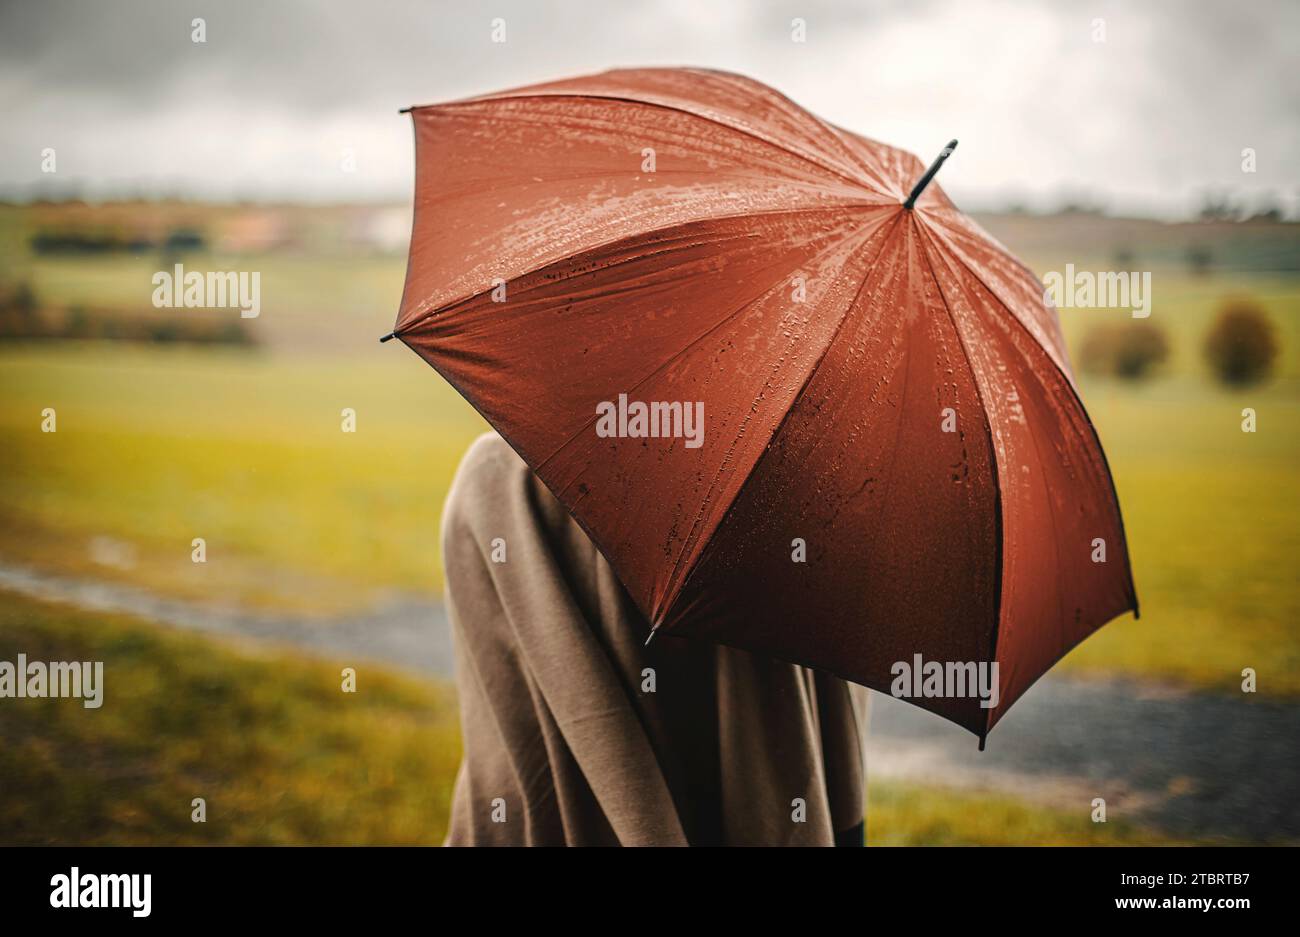 Grande ombrello immagini e fotografie stock ad alta risoluzione - Alamy